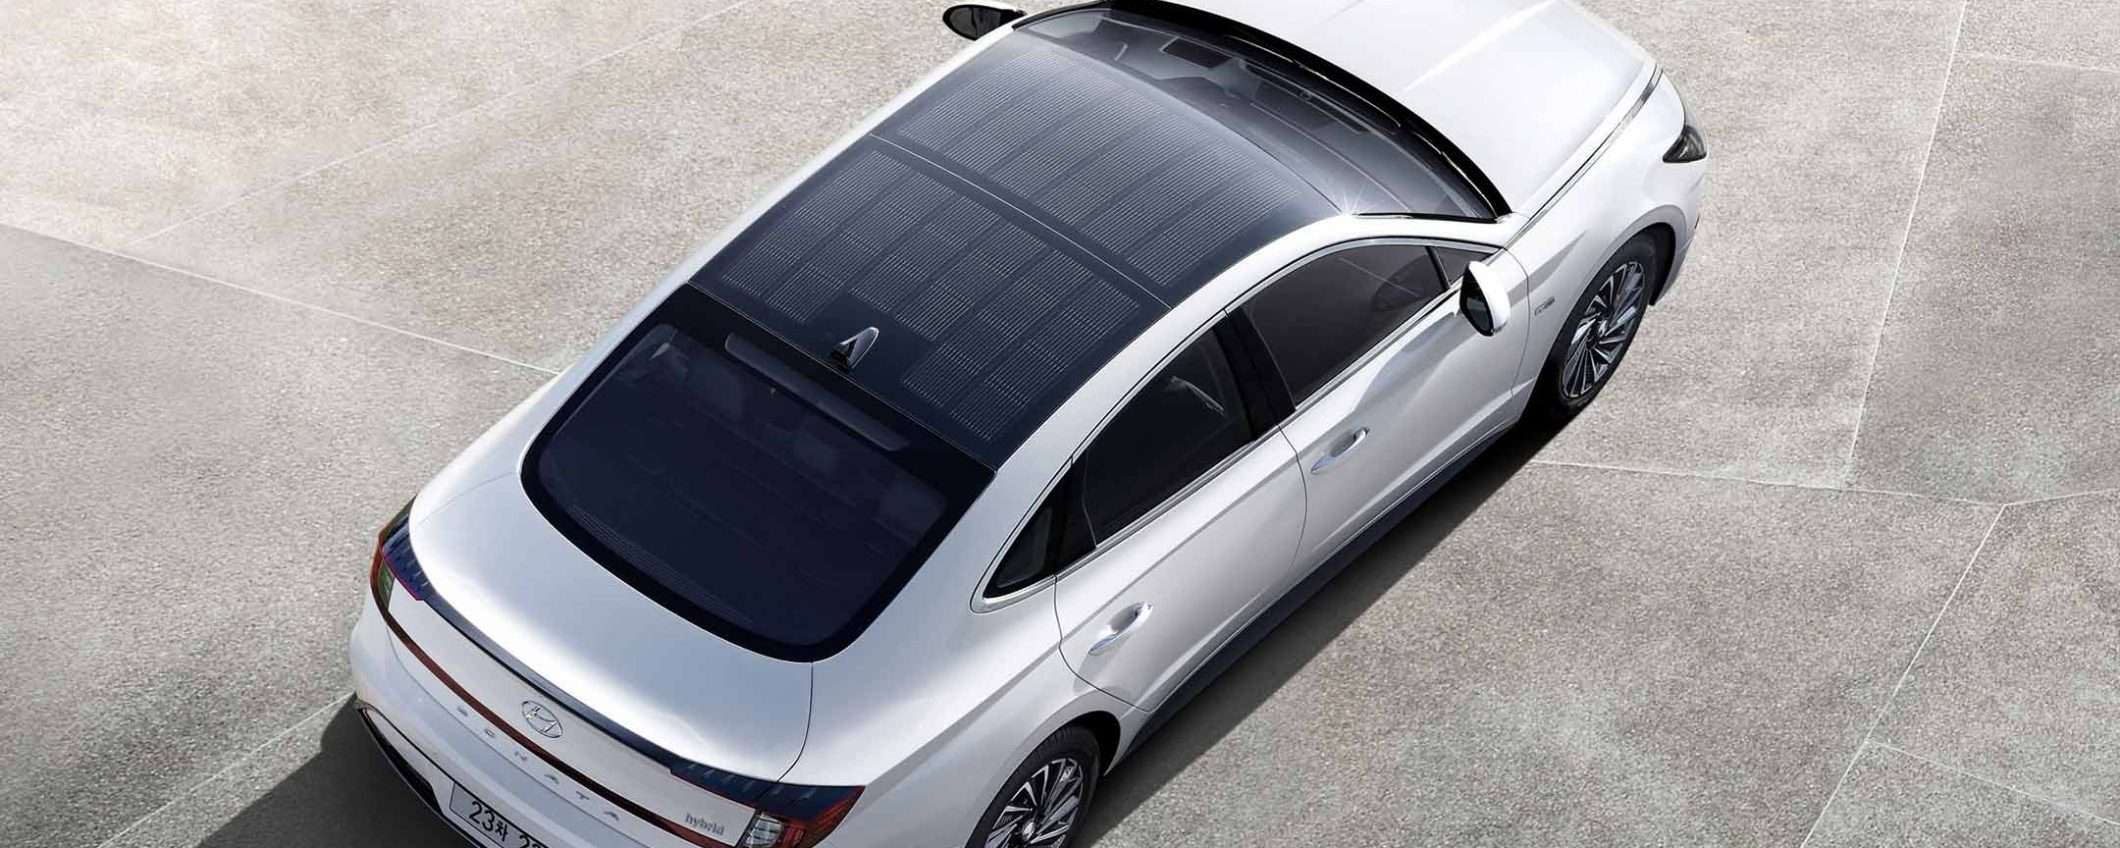 L'ibrida di Hyundai con il tetto fotovoltaico